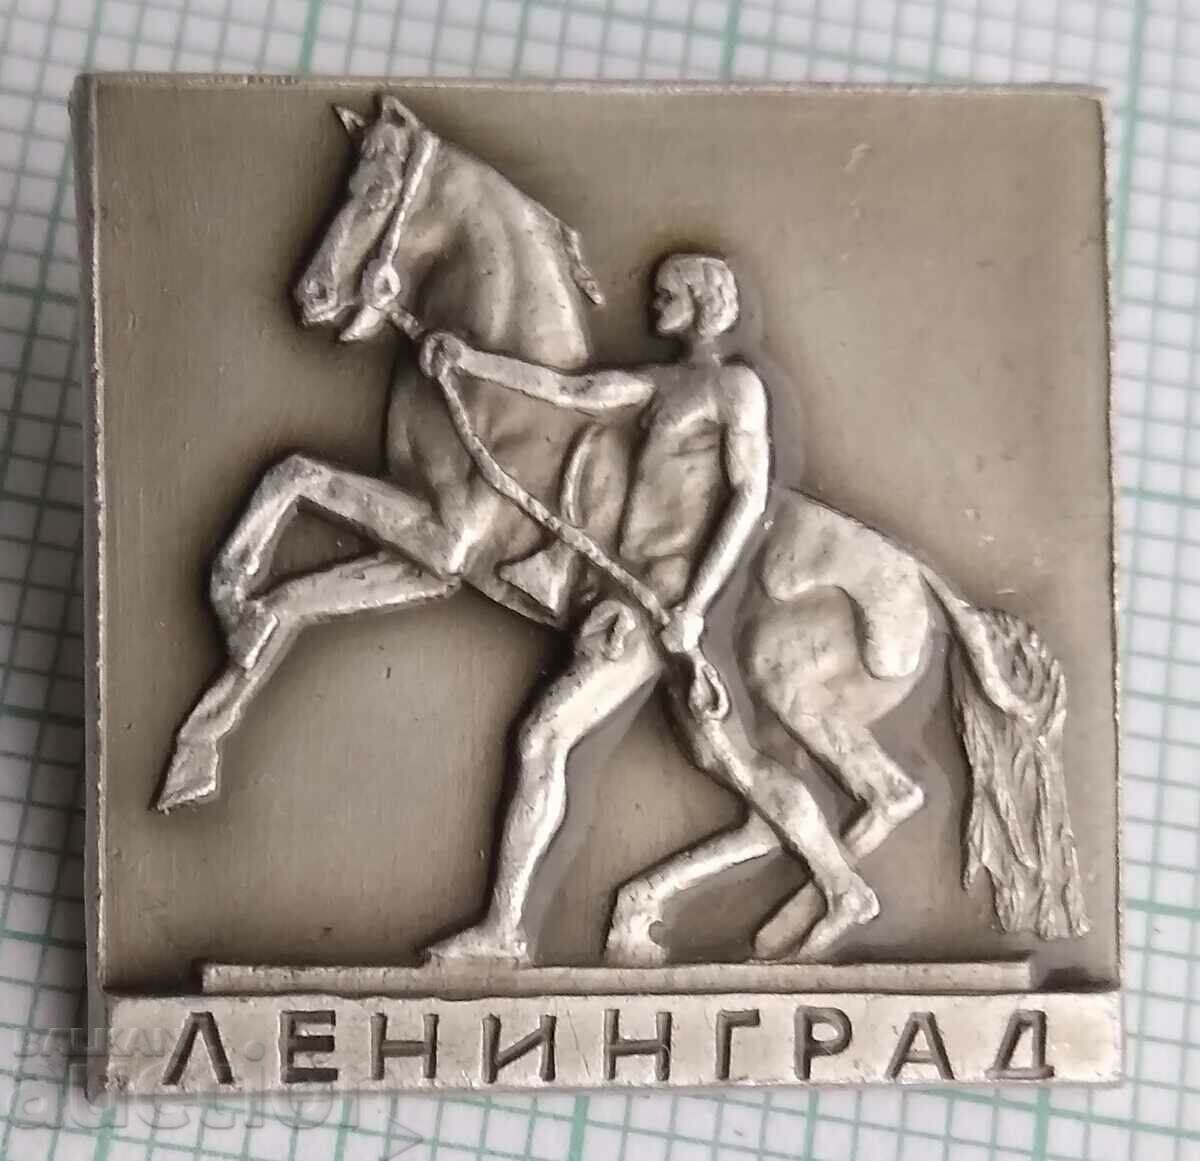 11973 Badge - Leningrad